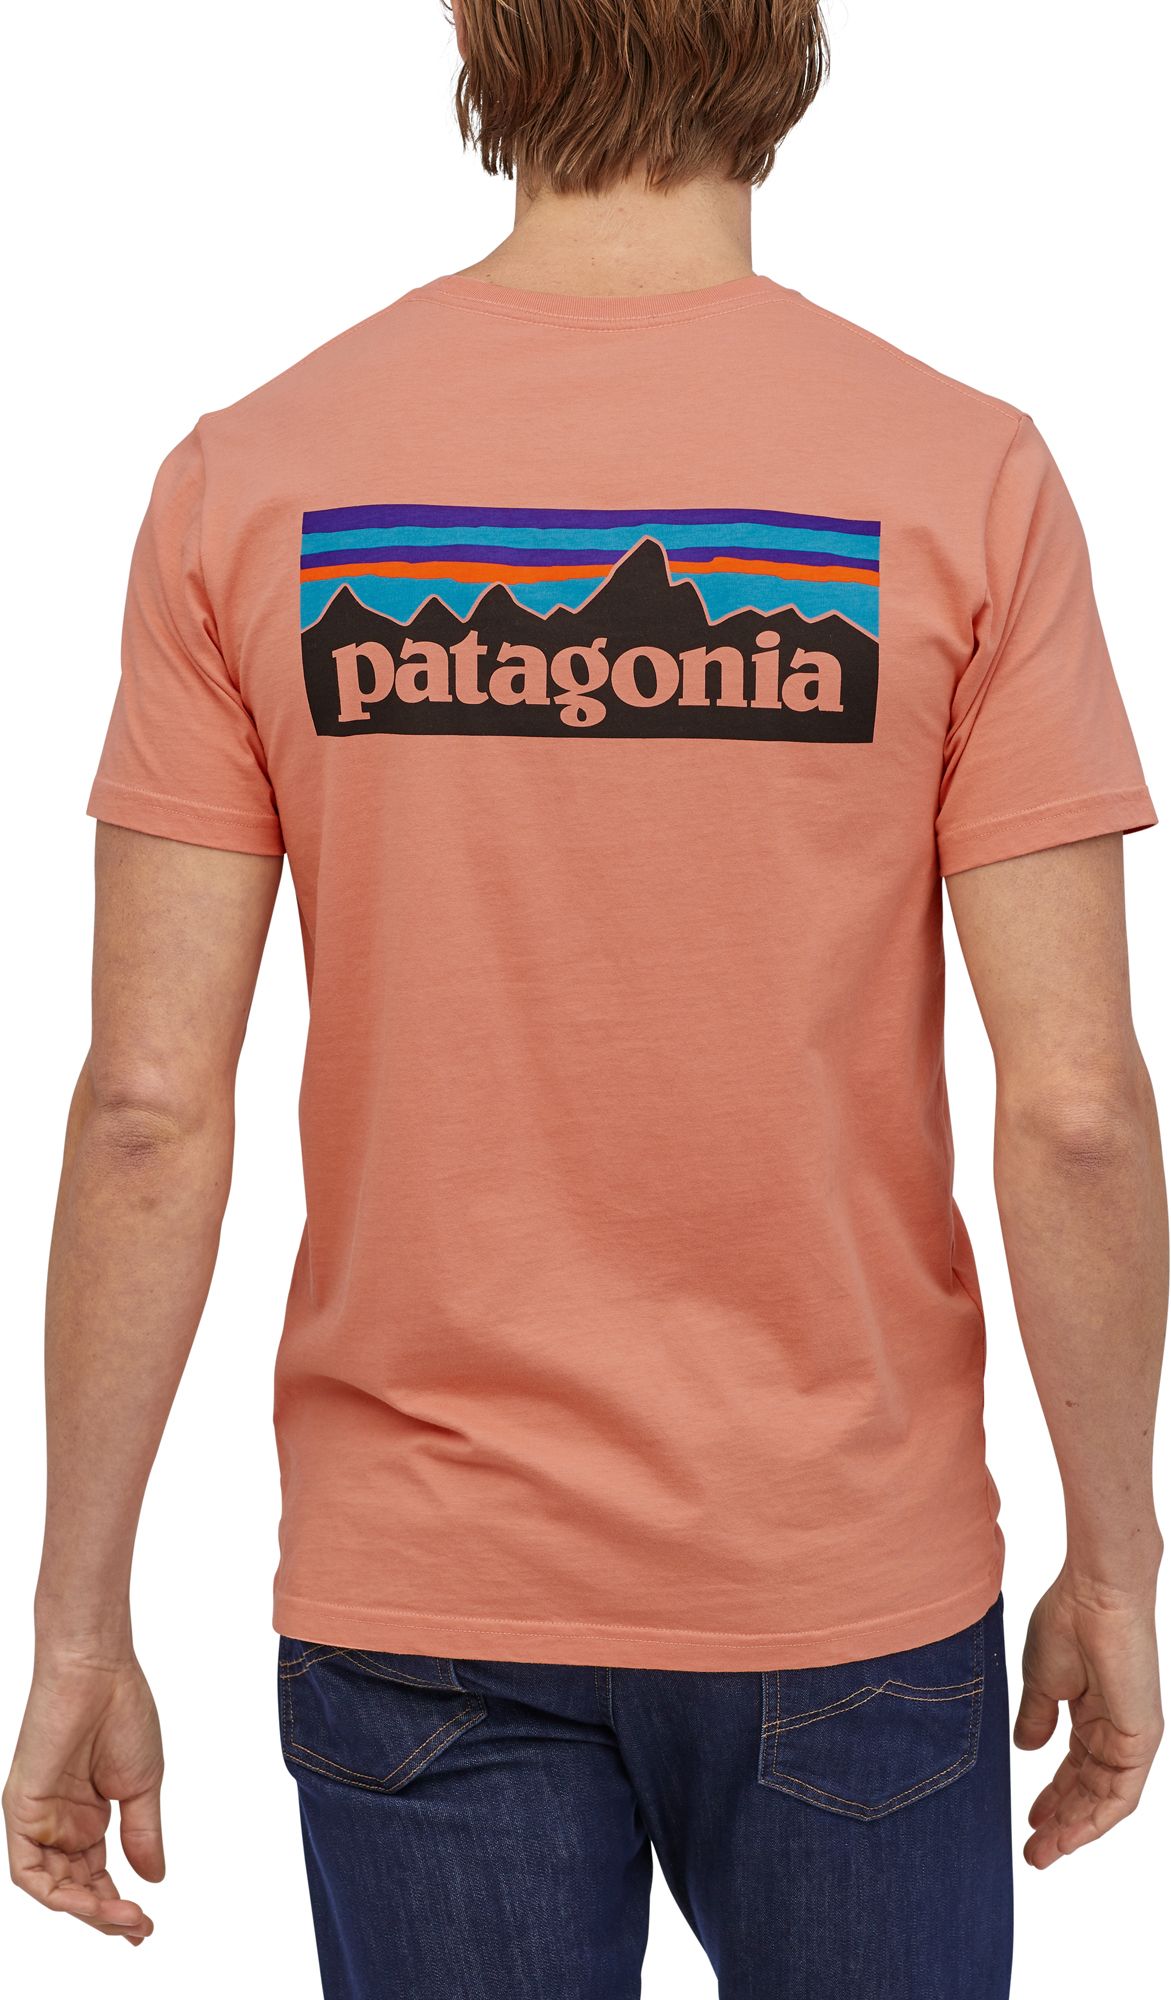 patagonia men tshirt